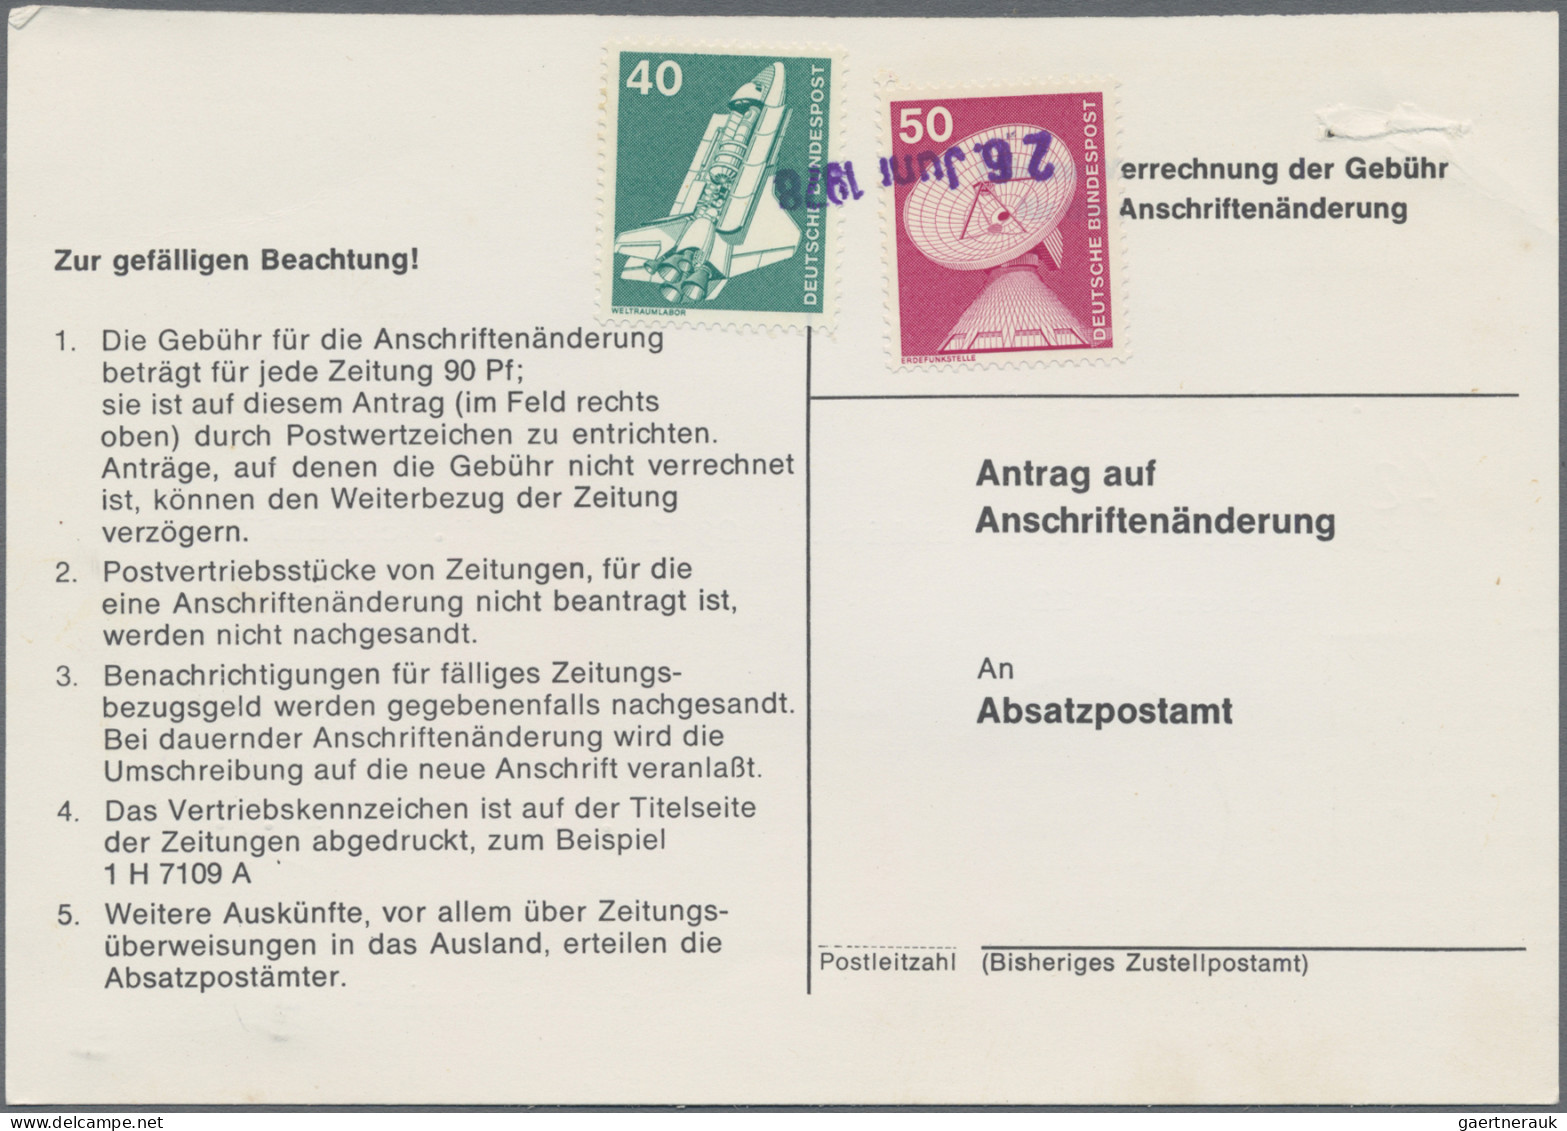 Bundesrepublik Deutschland: 1974/1978, Partie von ca. 80 Stück "Antrag auf Ansch